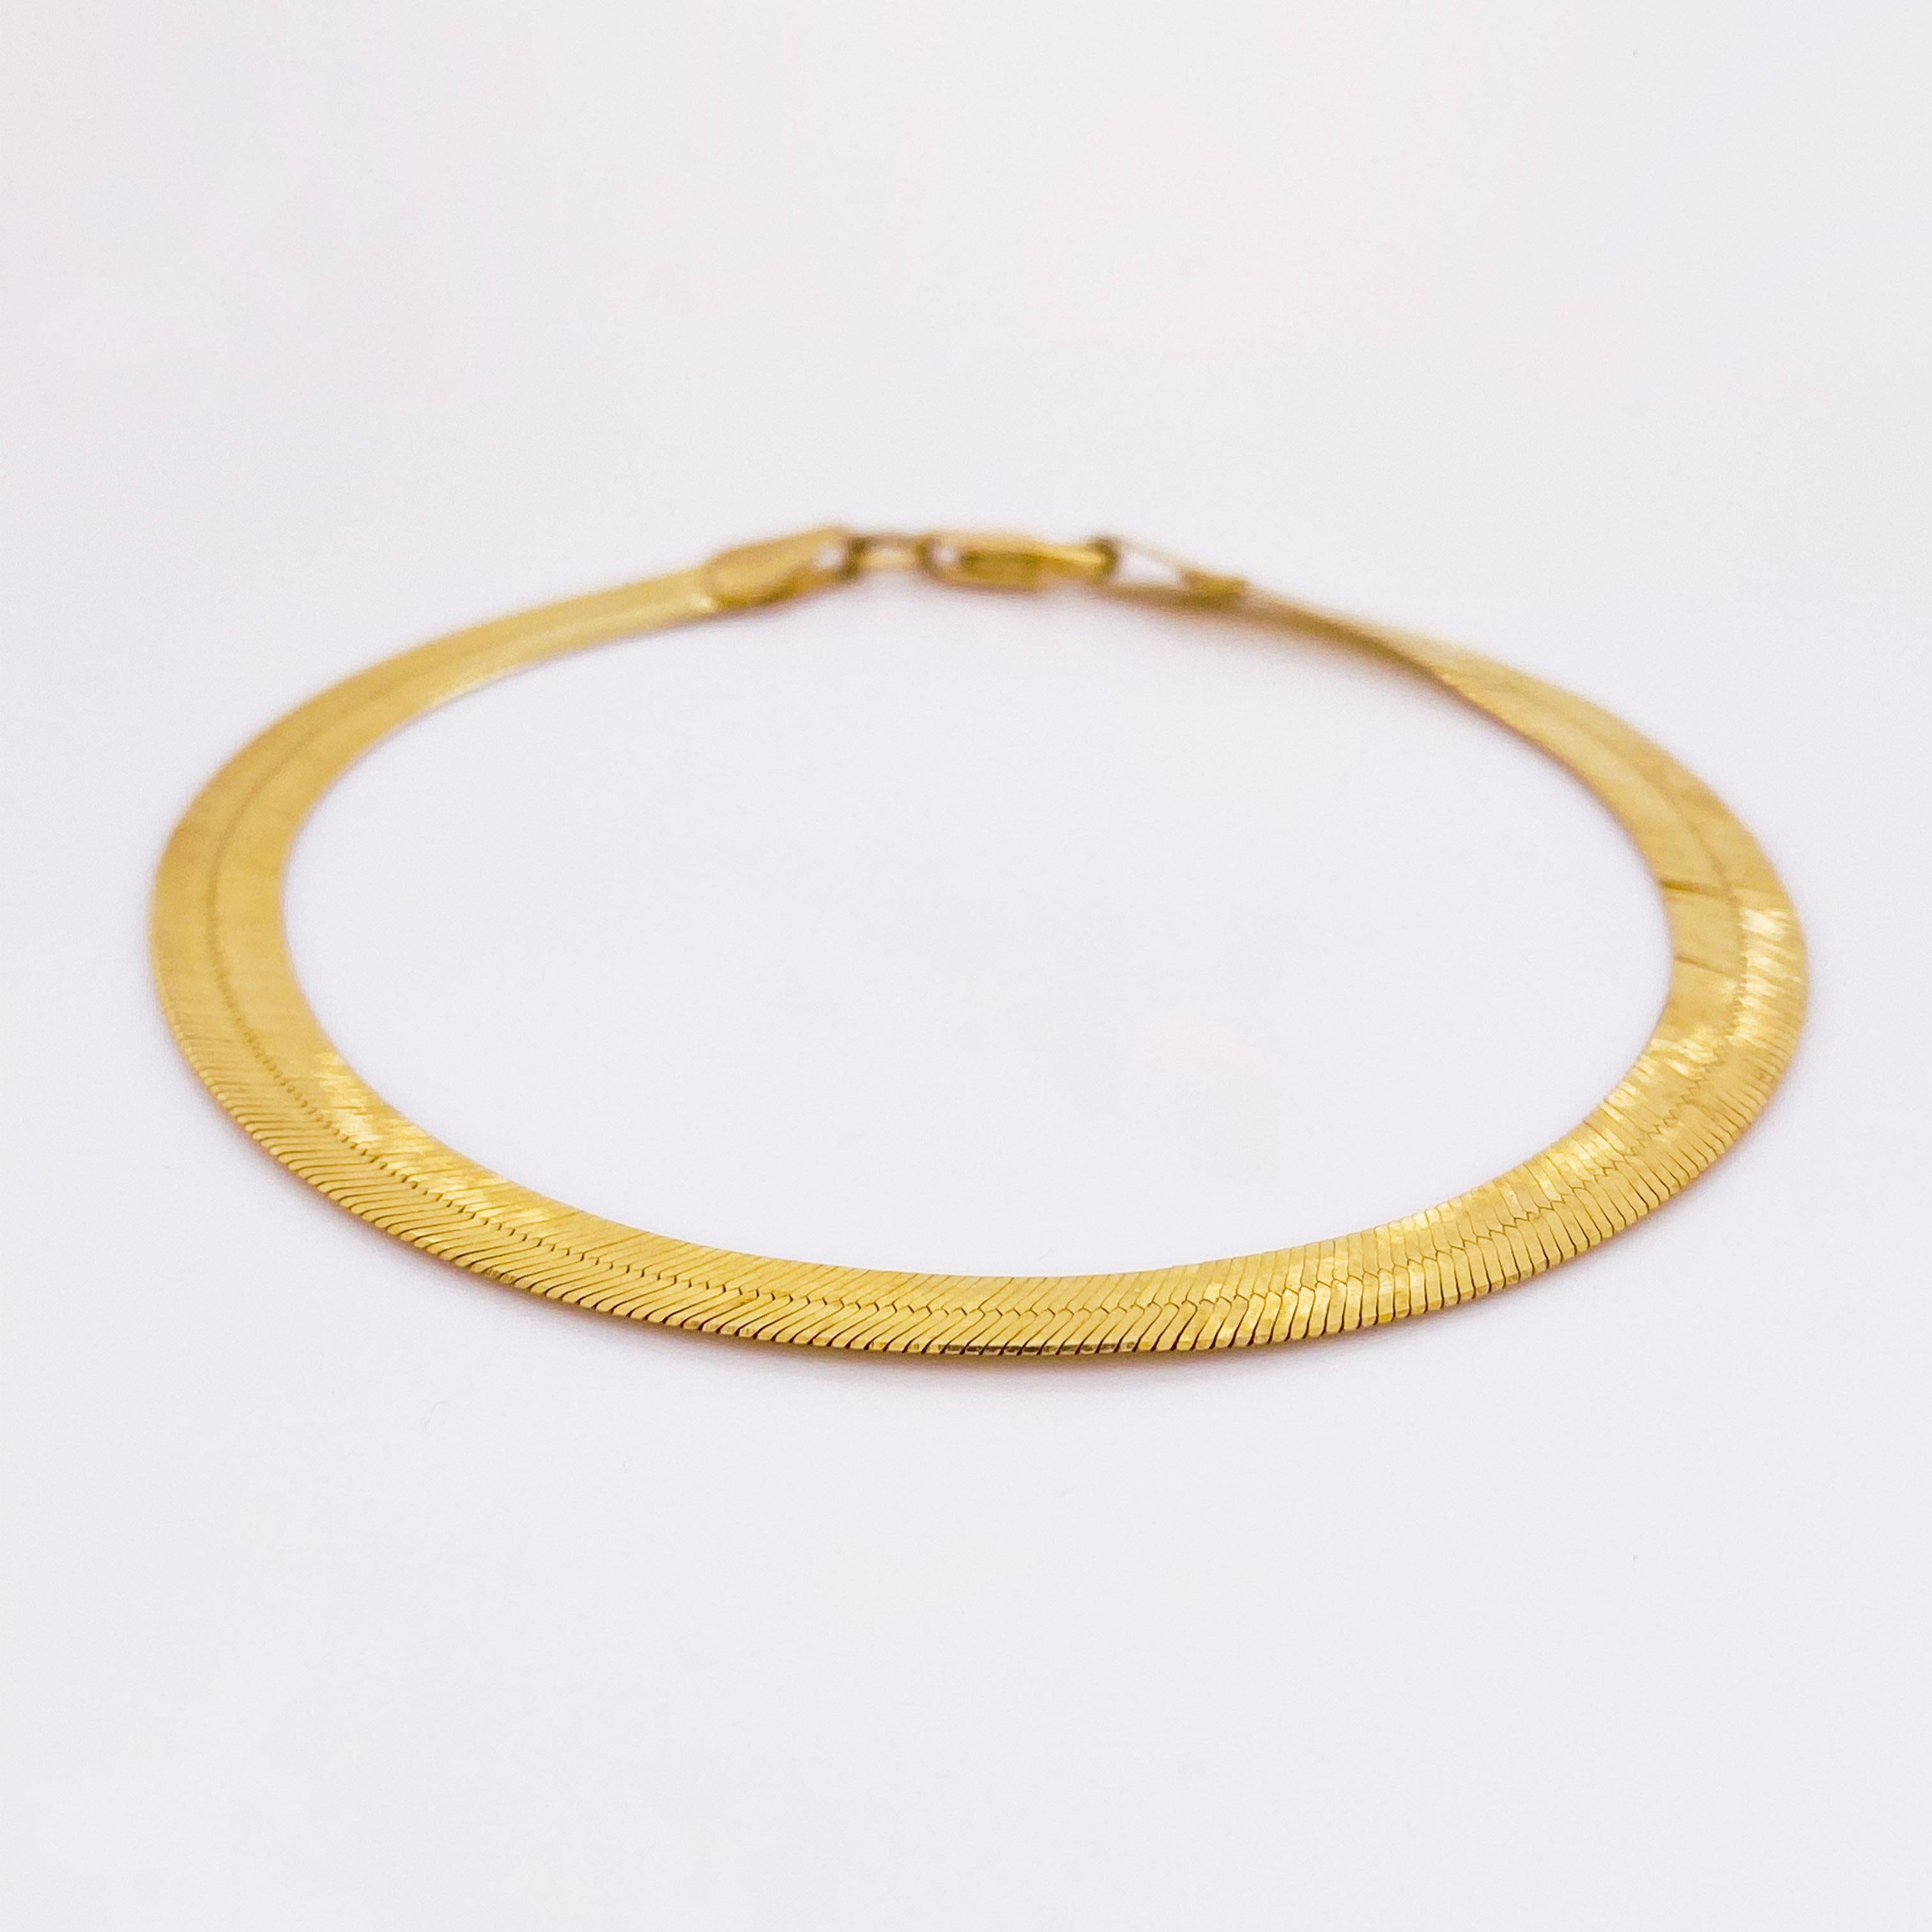 10k gold herringbone bracelet